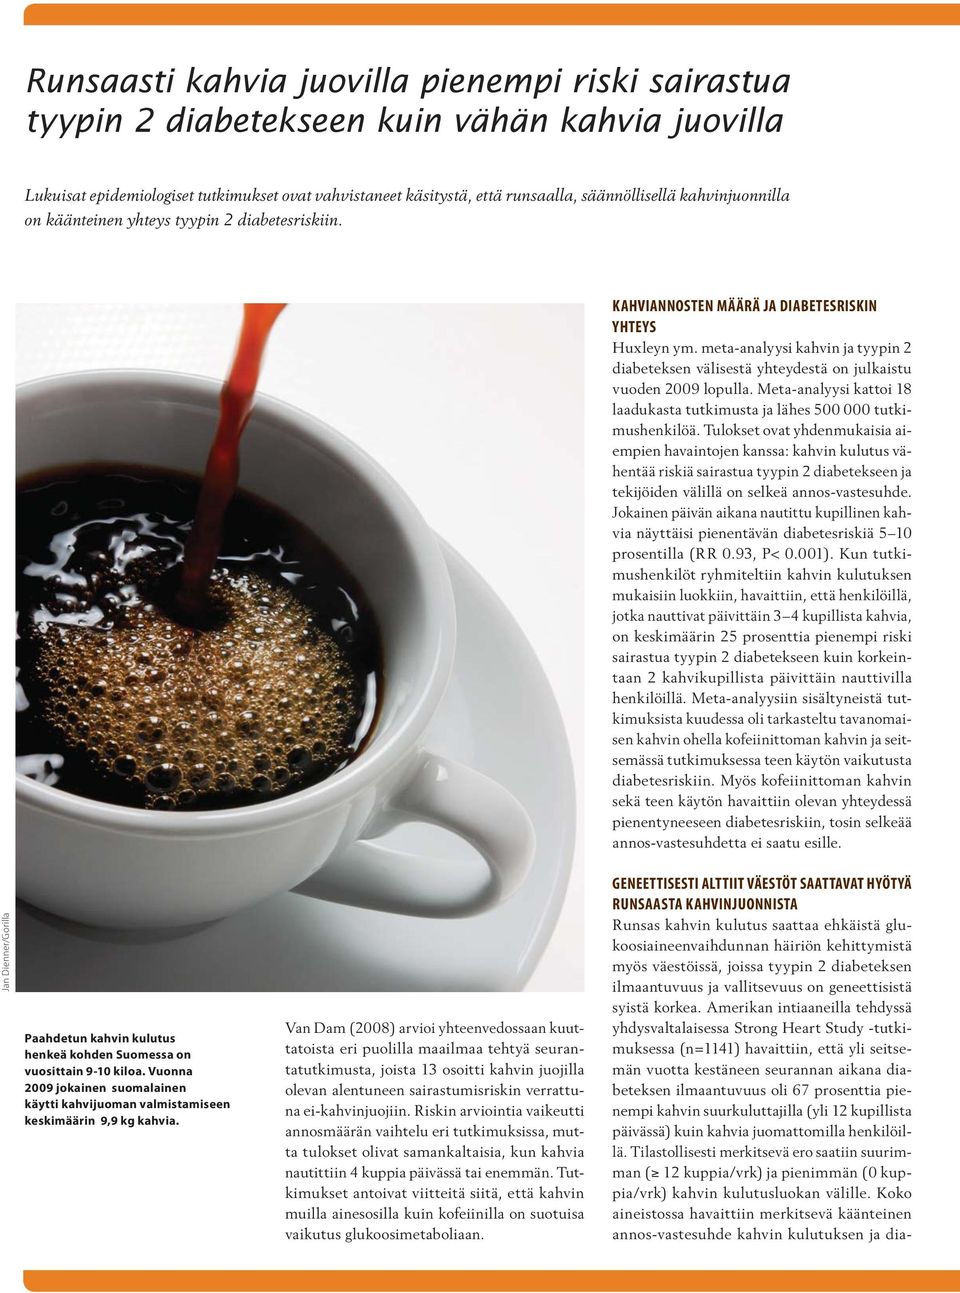 meta-analyysi kahvin ja tyypin 2 diabeteksen välisestä yhteydestä on julkaistu vuoden 2009 lopulla. Meta-analyysi kattoi 18 laadukasta tutkimusta ja lähes 500 000 tutkimushenkilöä.